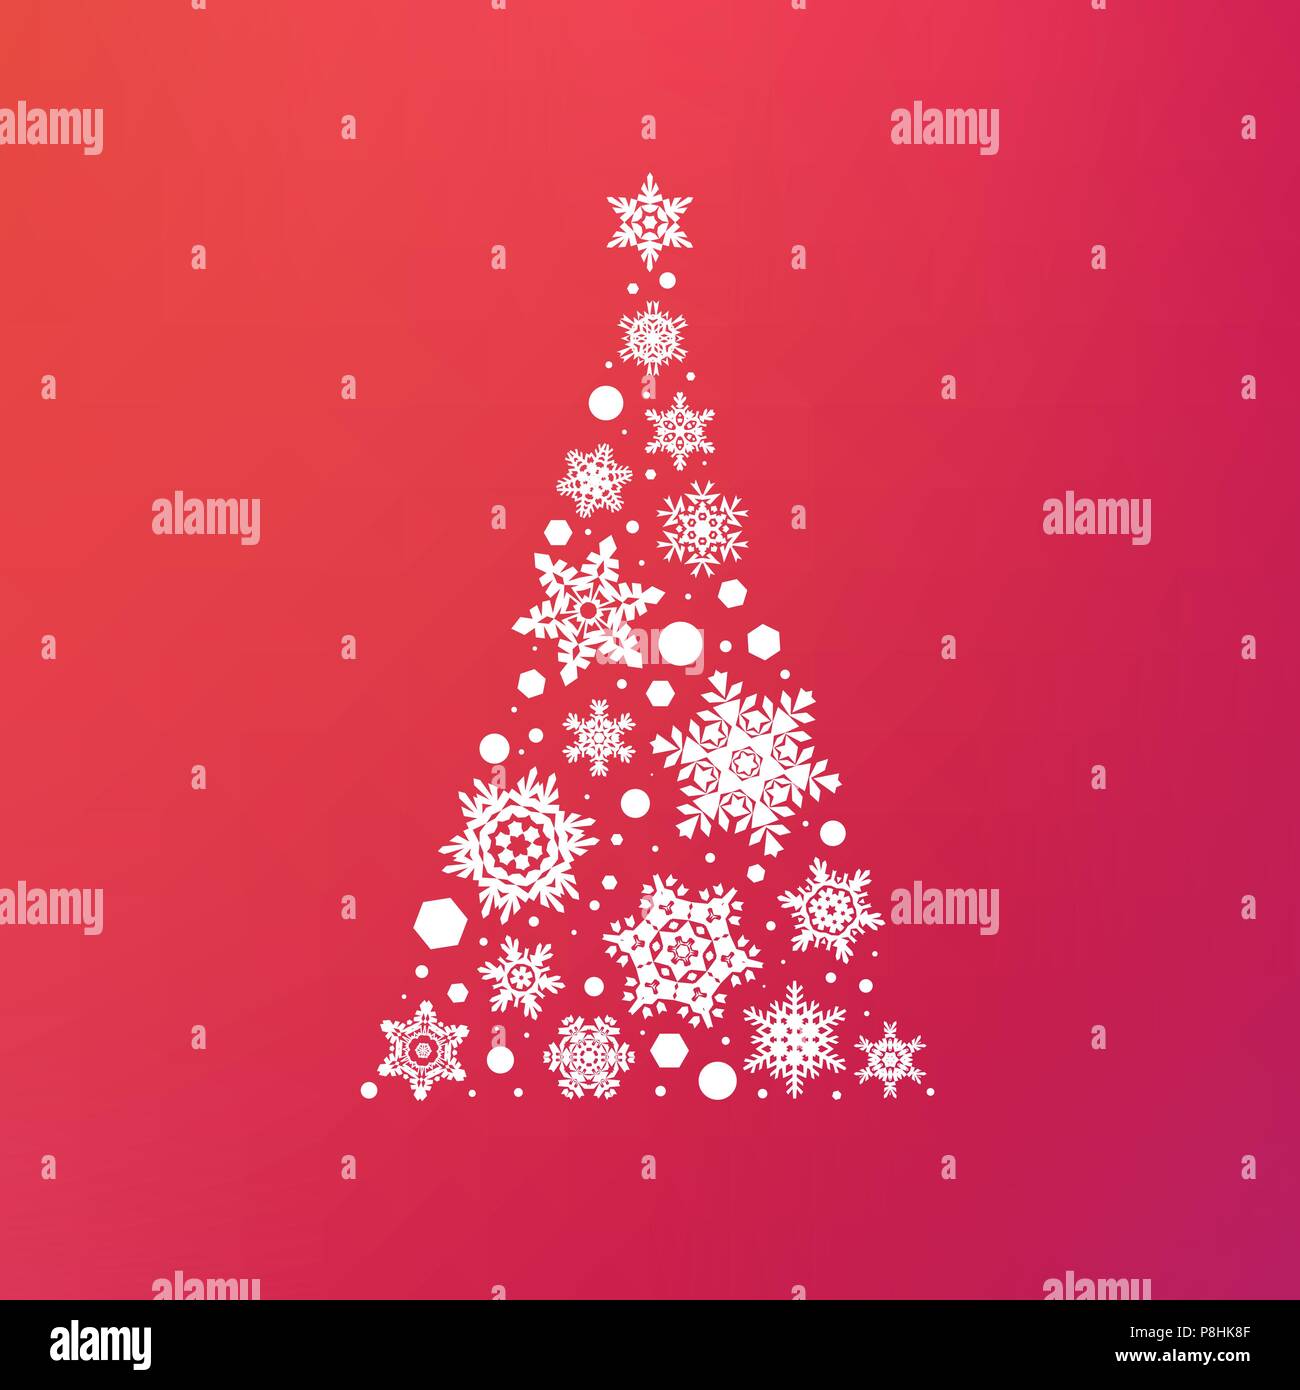 Buon Natale Rosa.Stock Illustrazione Vettoriale Abstract Albero Di Natale I Fiocchi Di Neve Sfondo Rosa Concept Design Per